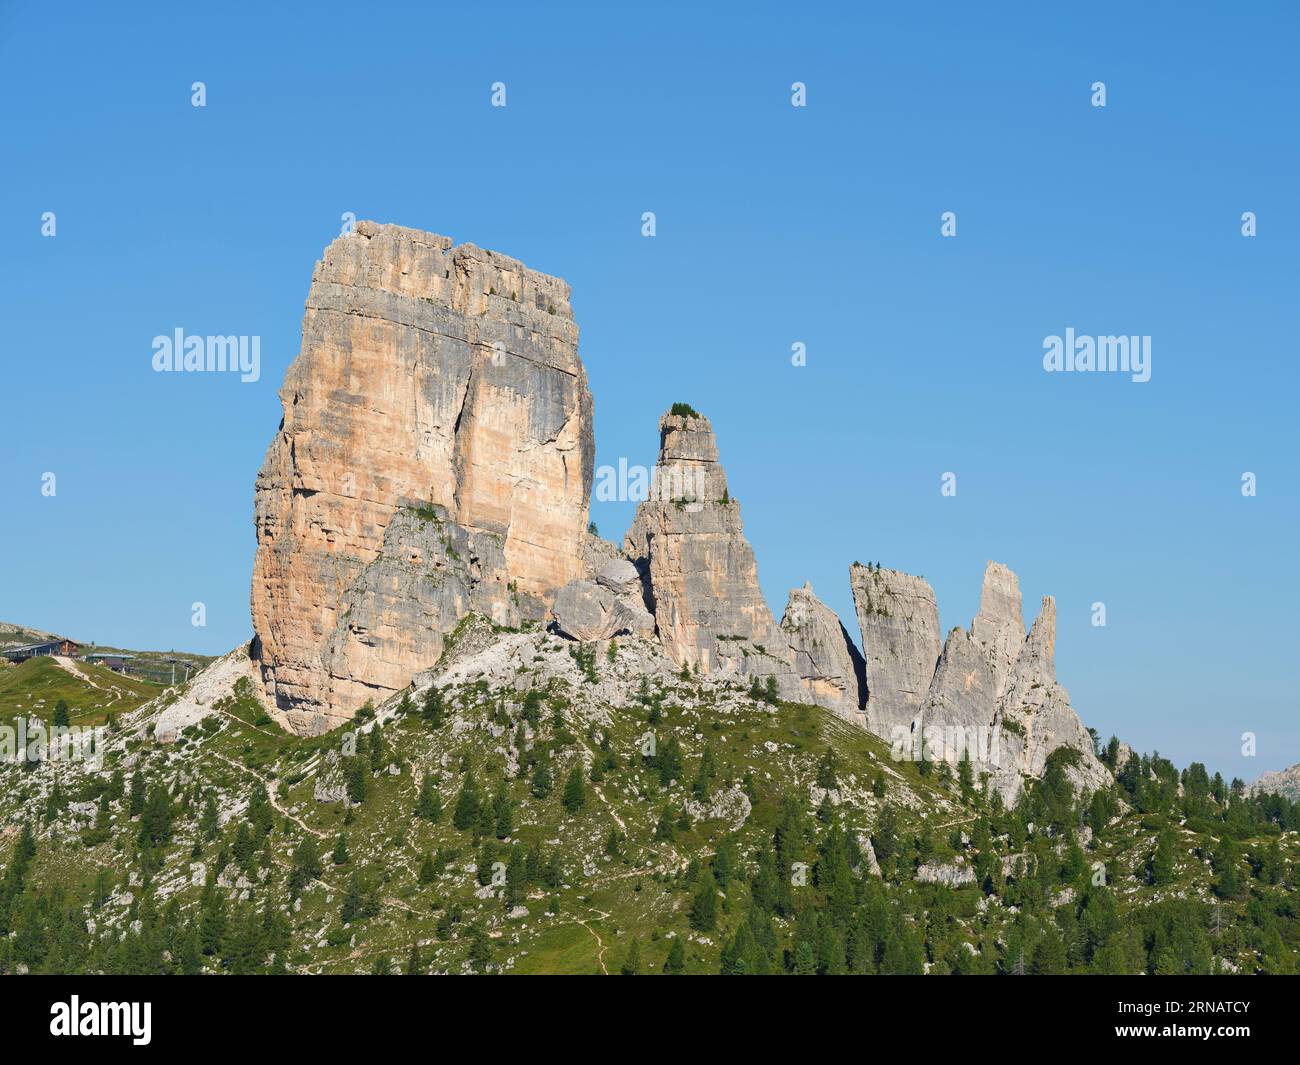 AERIAL VIEW. The Cinque Torri (2361m). Cortina d'Ampezzo, Province of Belluno, Veneto, Italy. Stock Photo